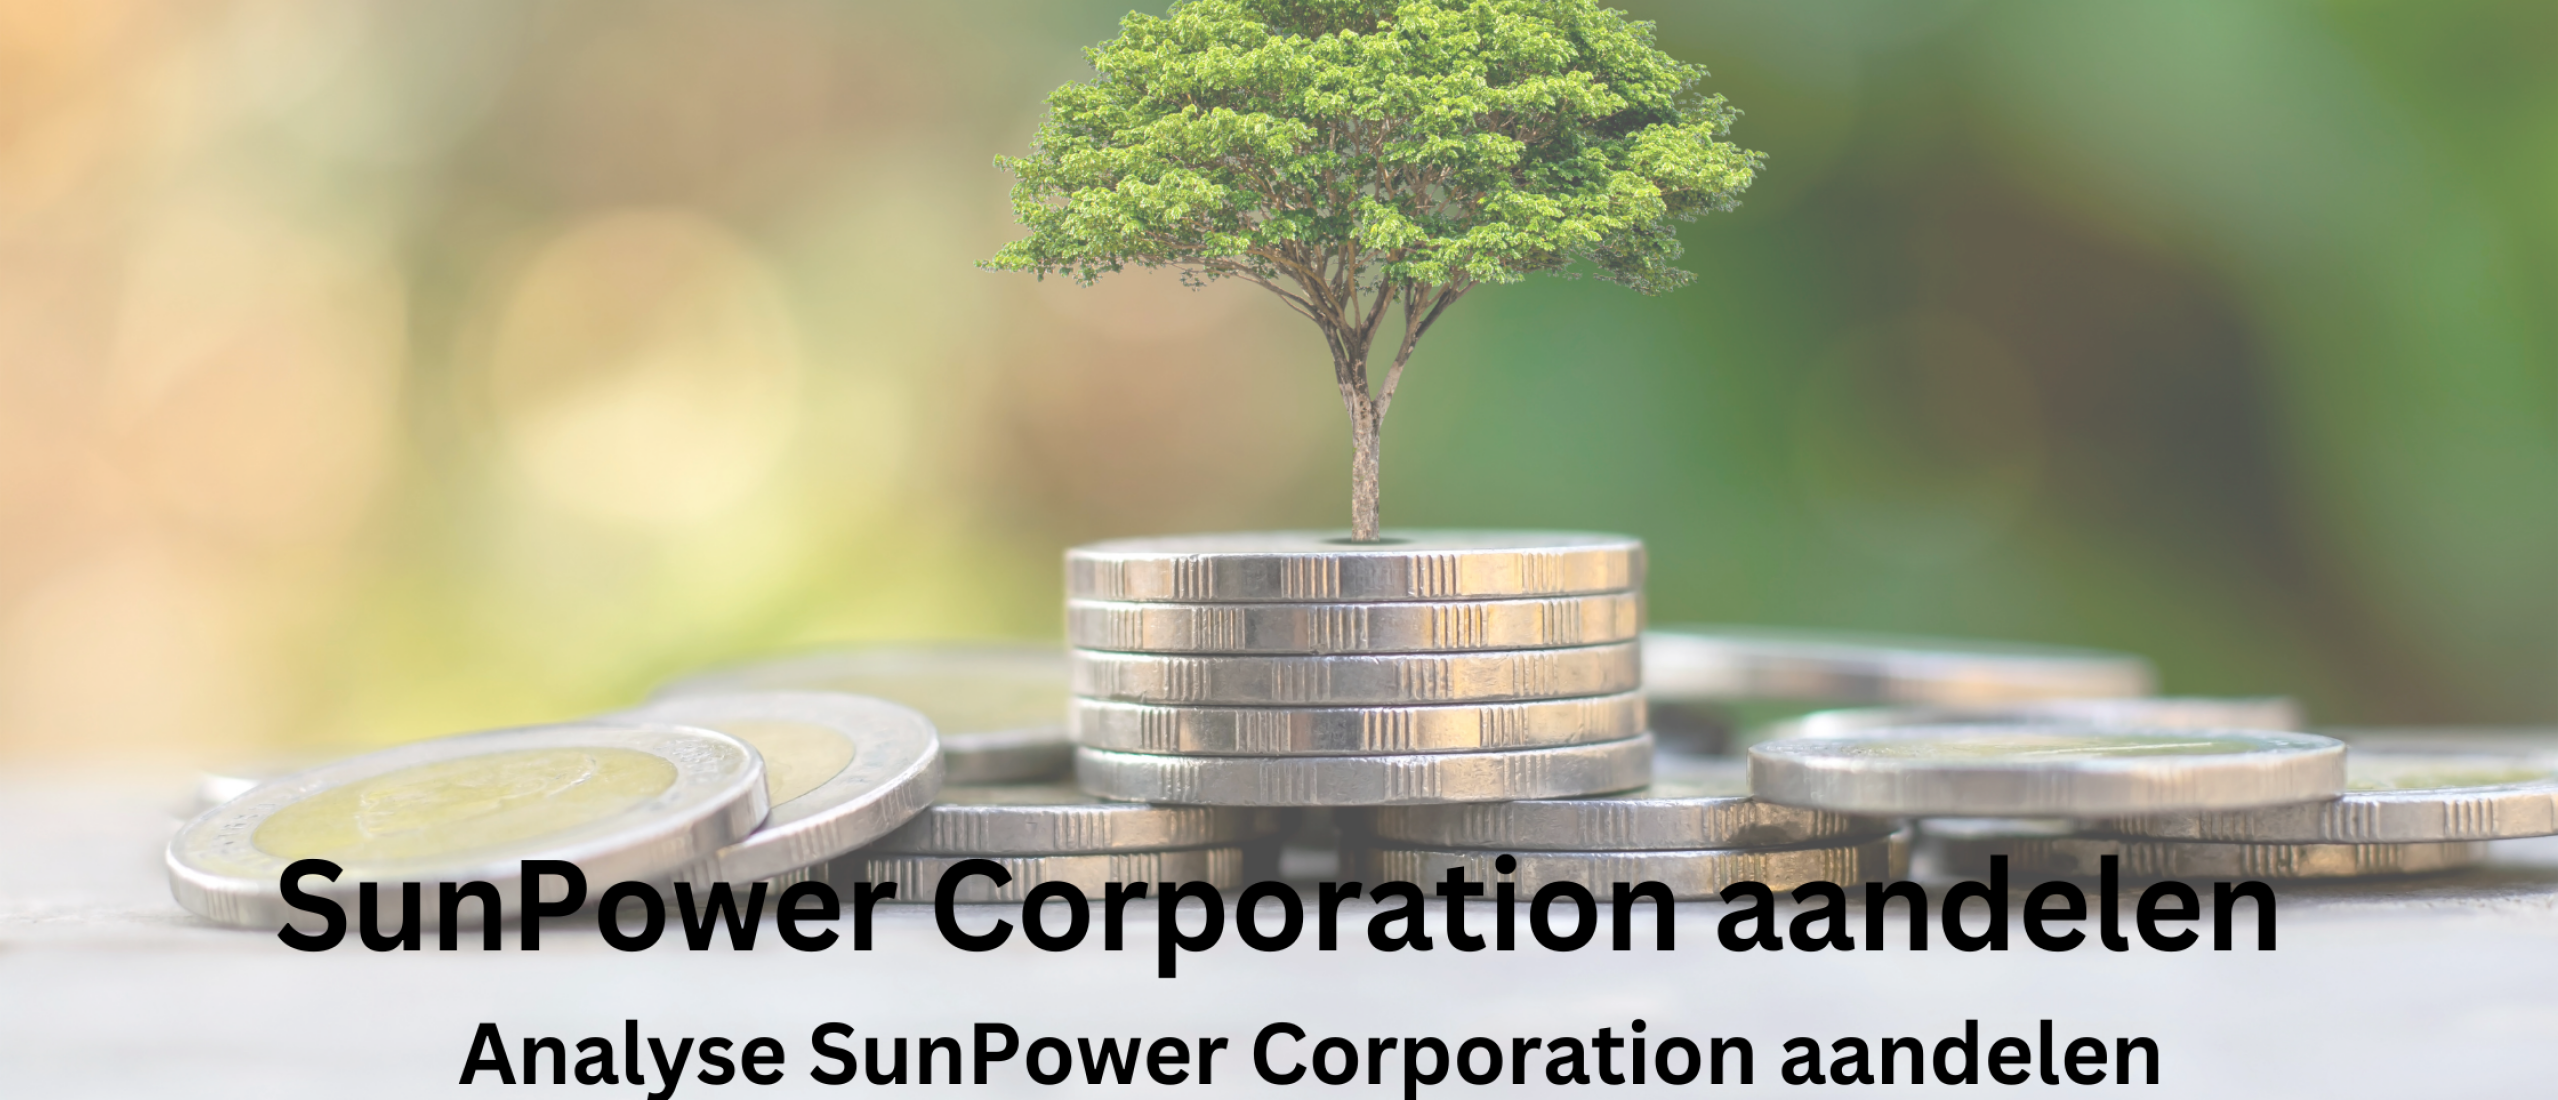 aandelen-sunpower-corporation-analyse